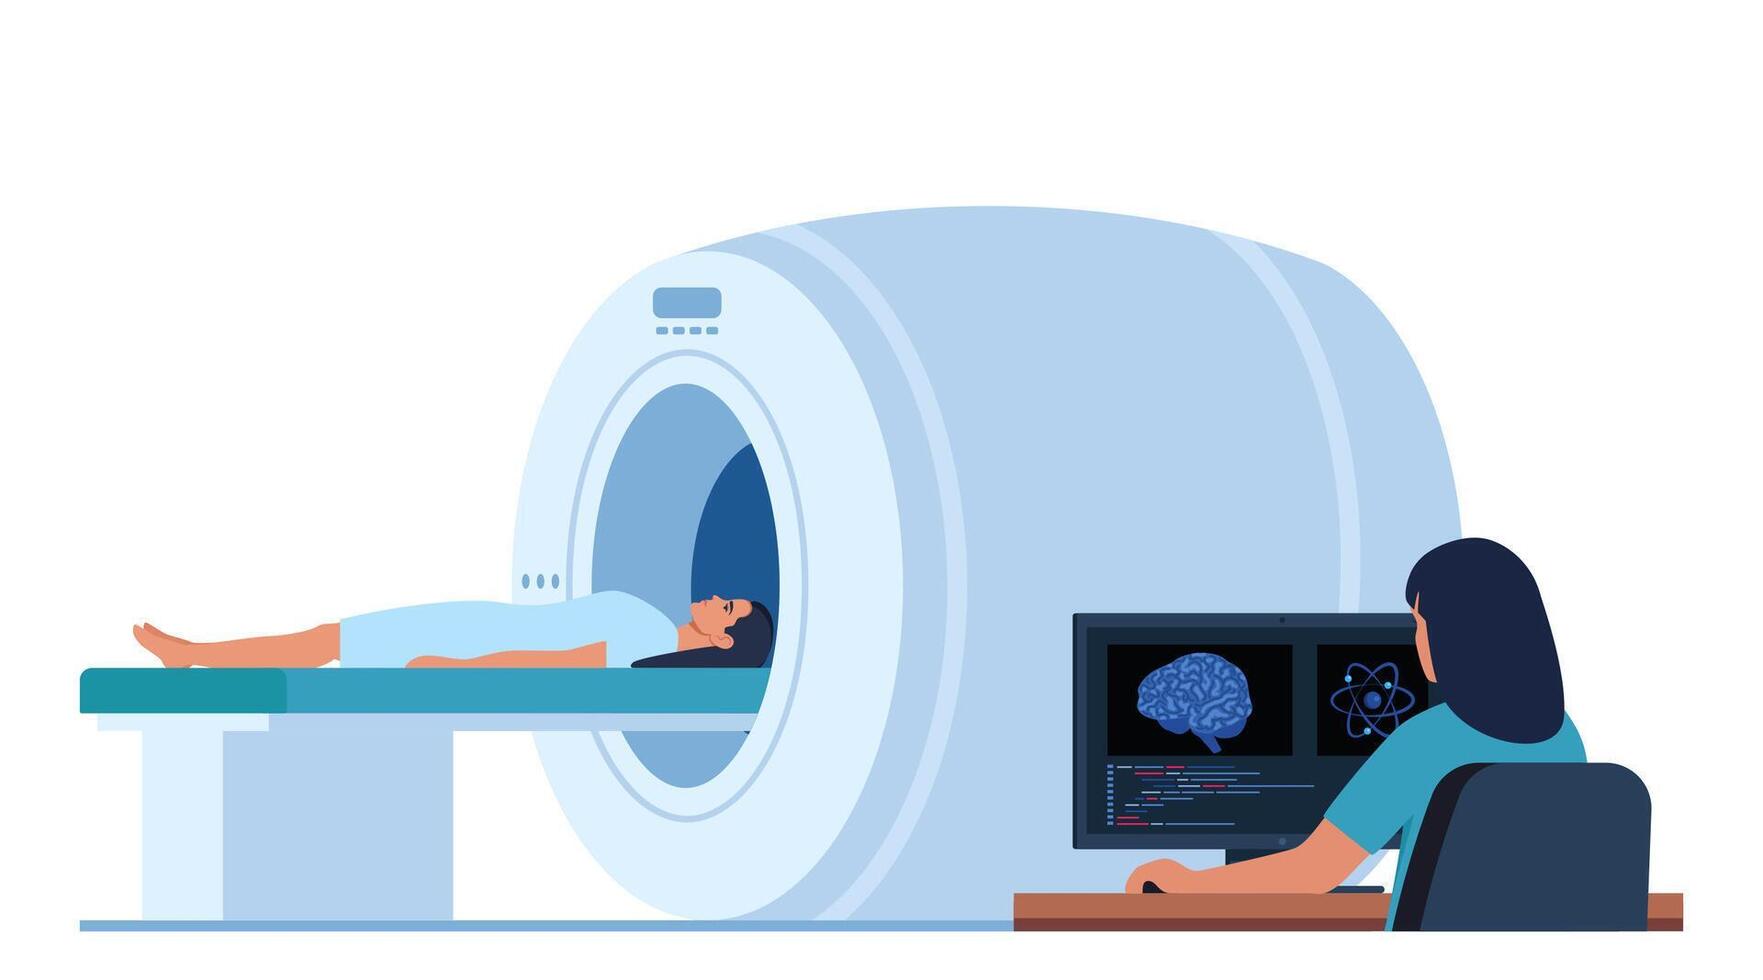 läkare ser på resultat av patient hjärna skanna på de övervaka skärmar i främre av mri maskin med patient liggande ner. platt vektor illustration.